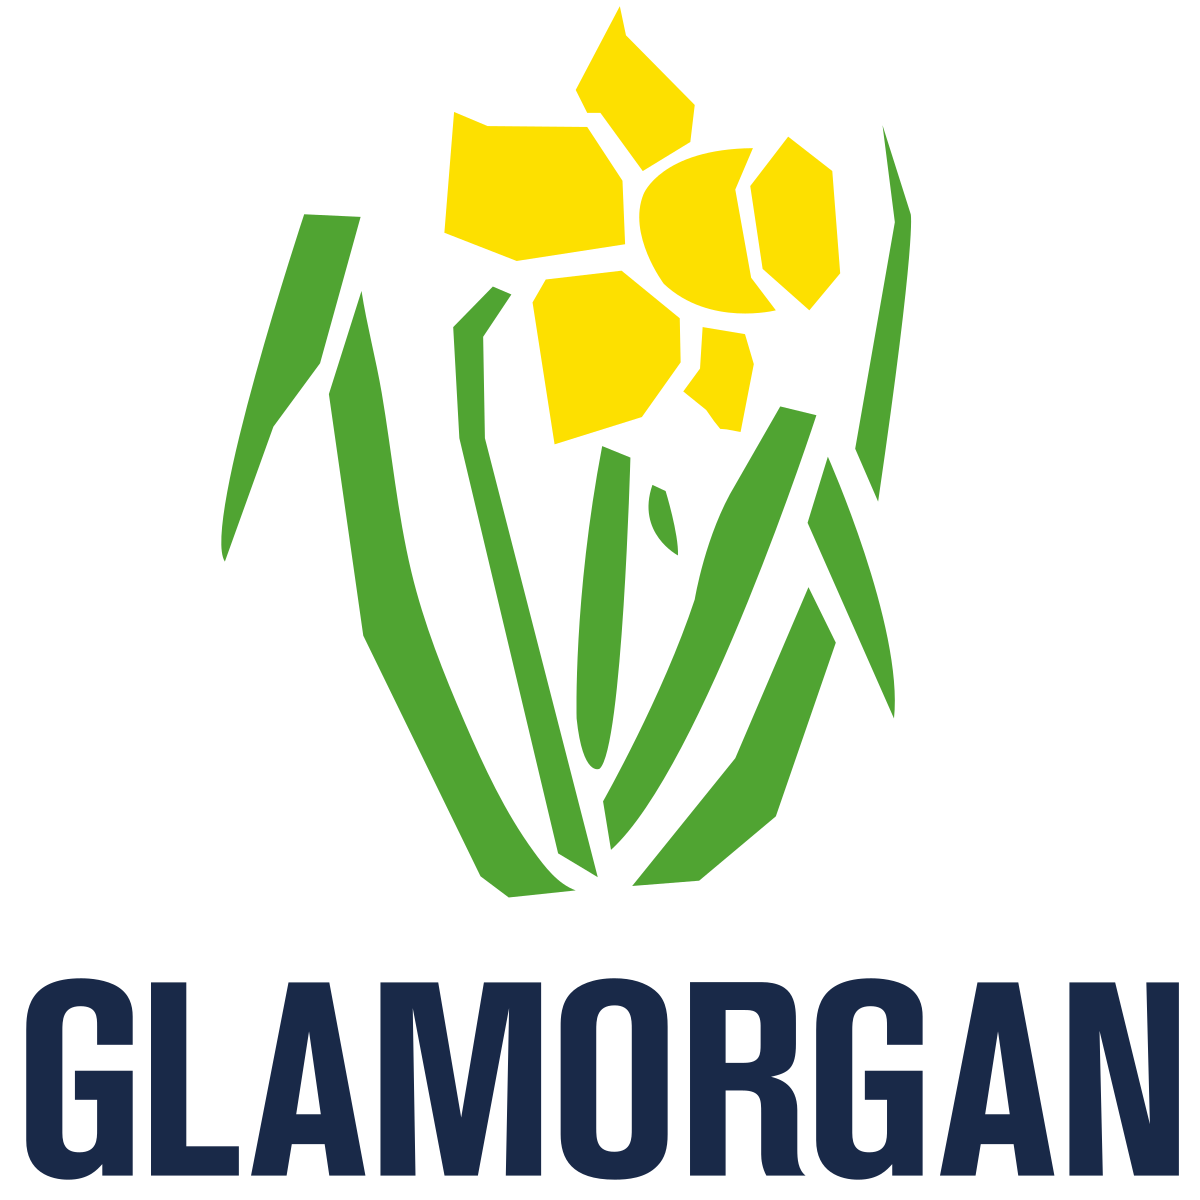 Glamorgan T20 Blast 2023 Squad